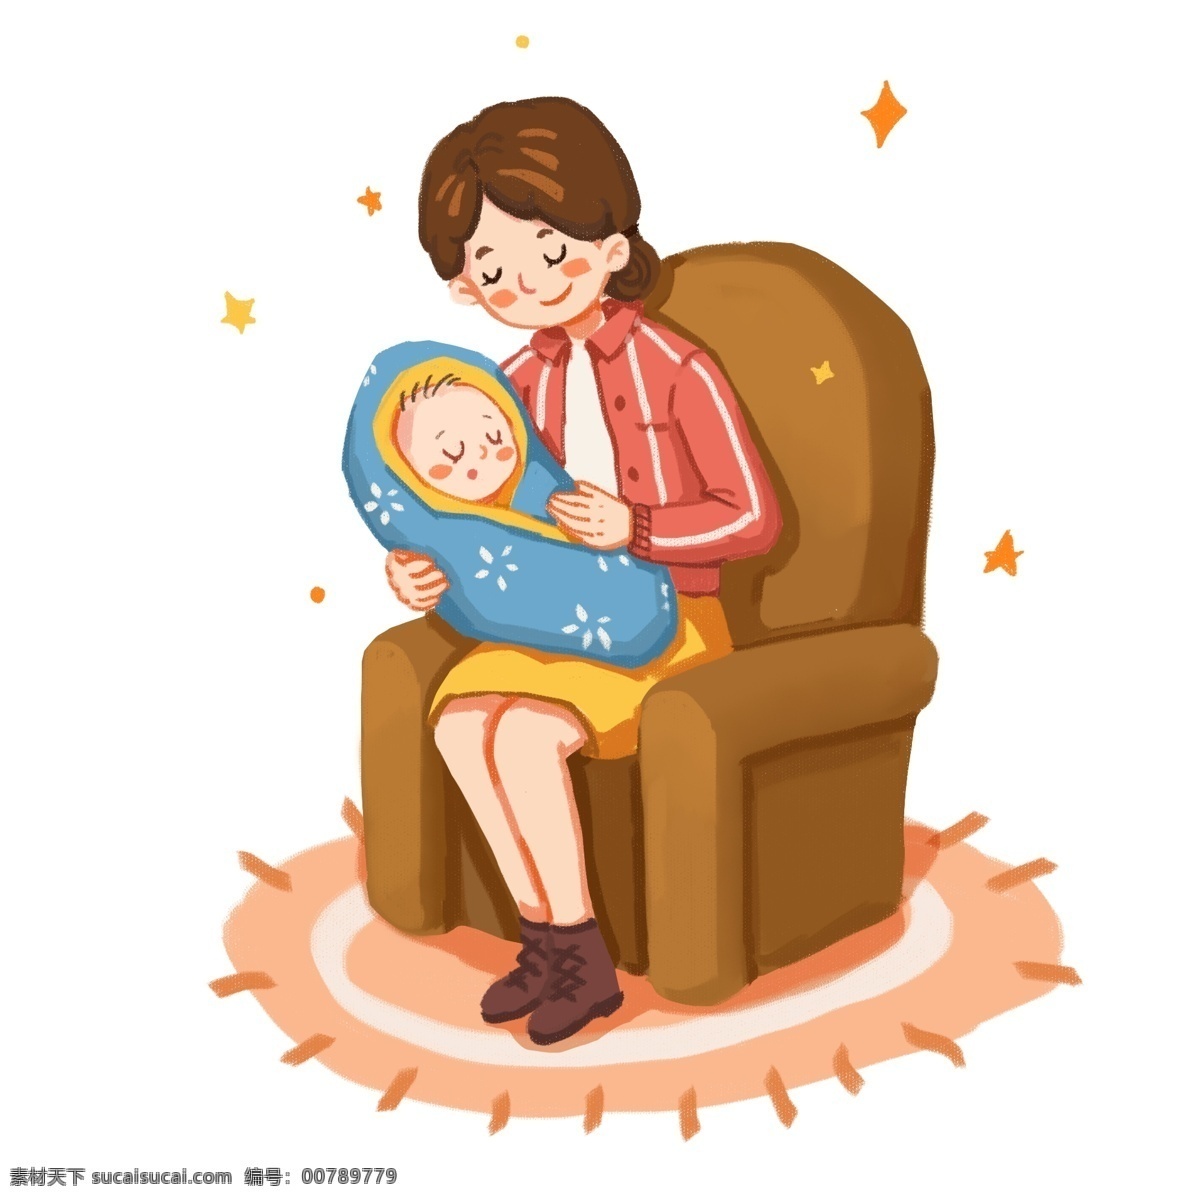 母亲节 套 图 系列 宝宝 妈妈 沙发 礼物 盆景 节日礼物 黄色 蓝色 粉红 装饰 贴画 免扣 套图